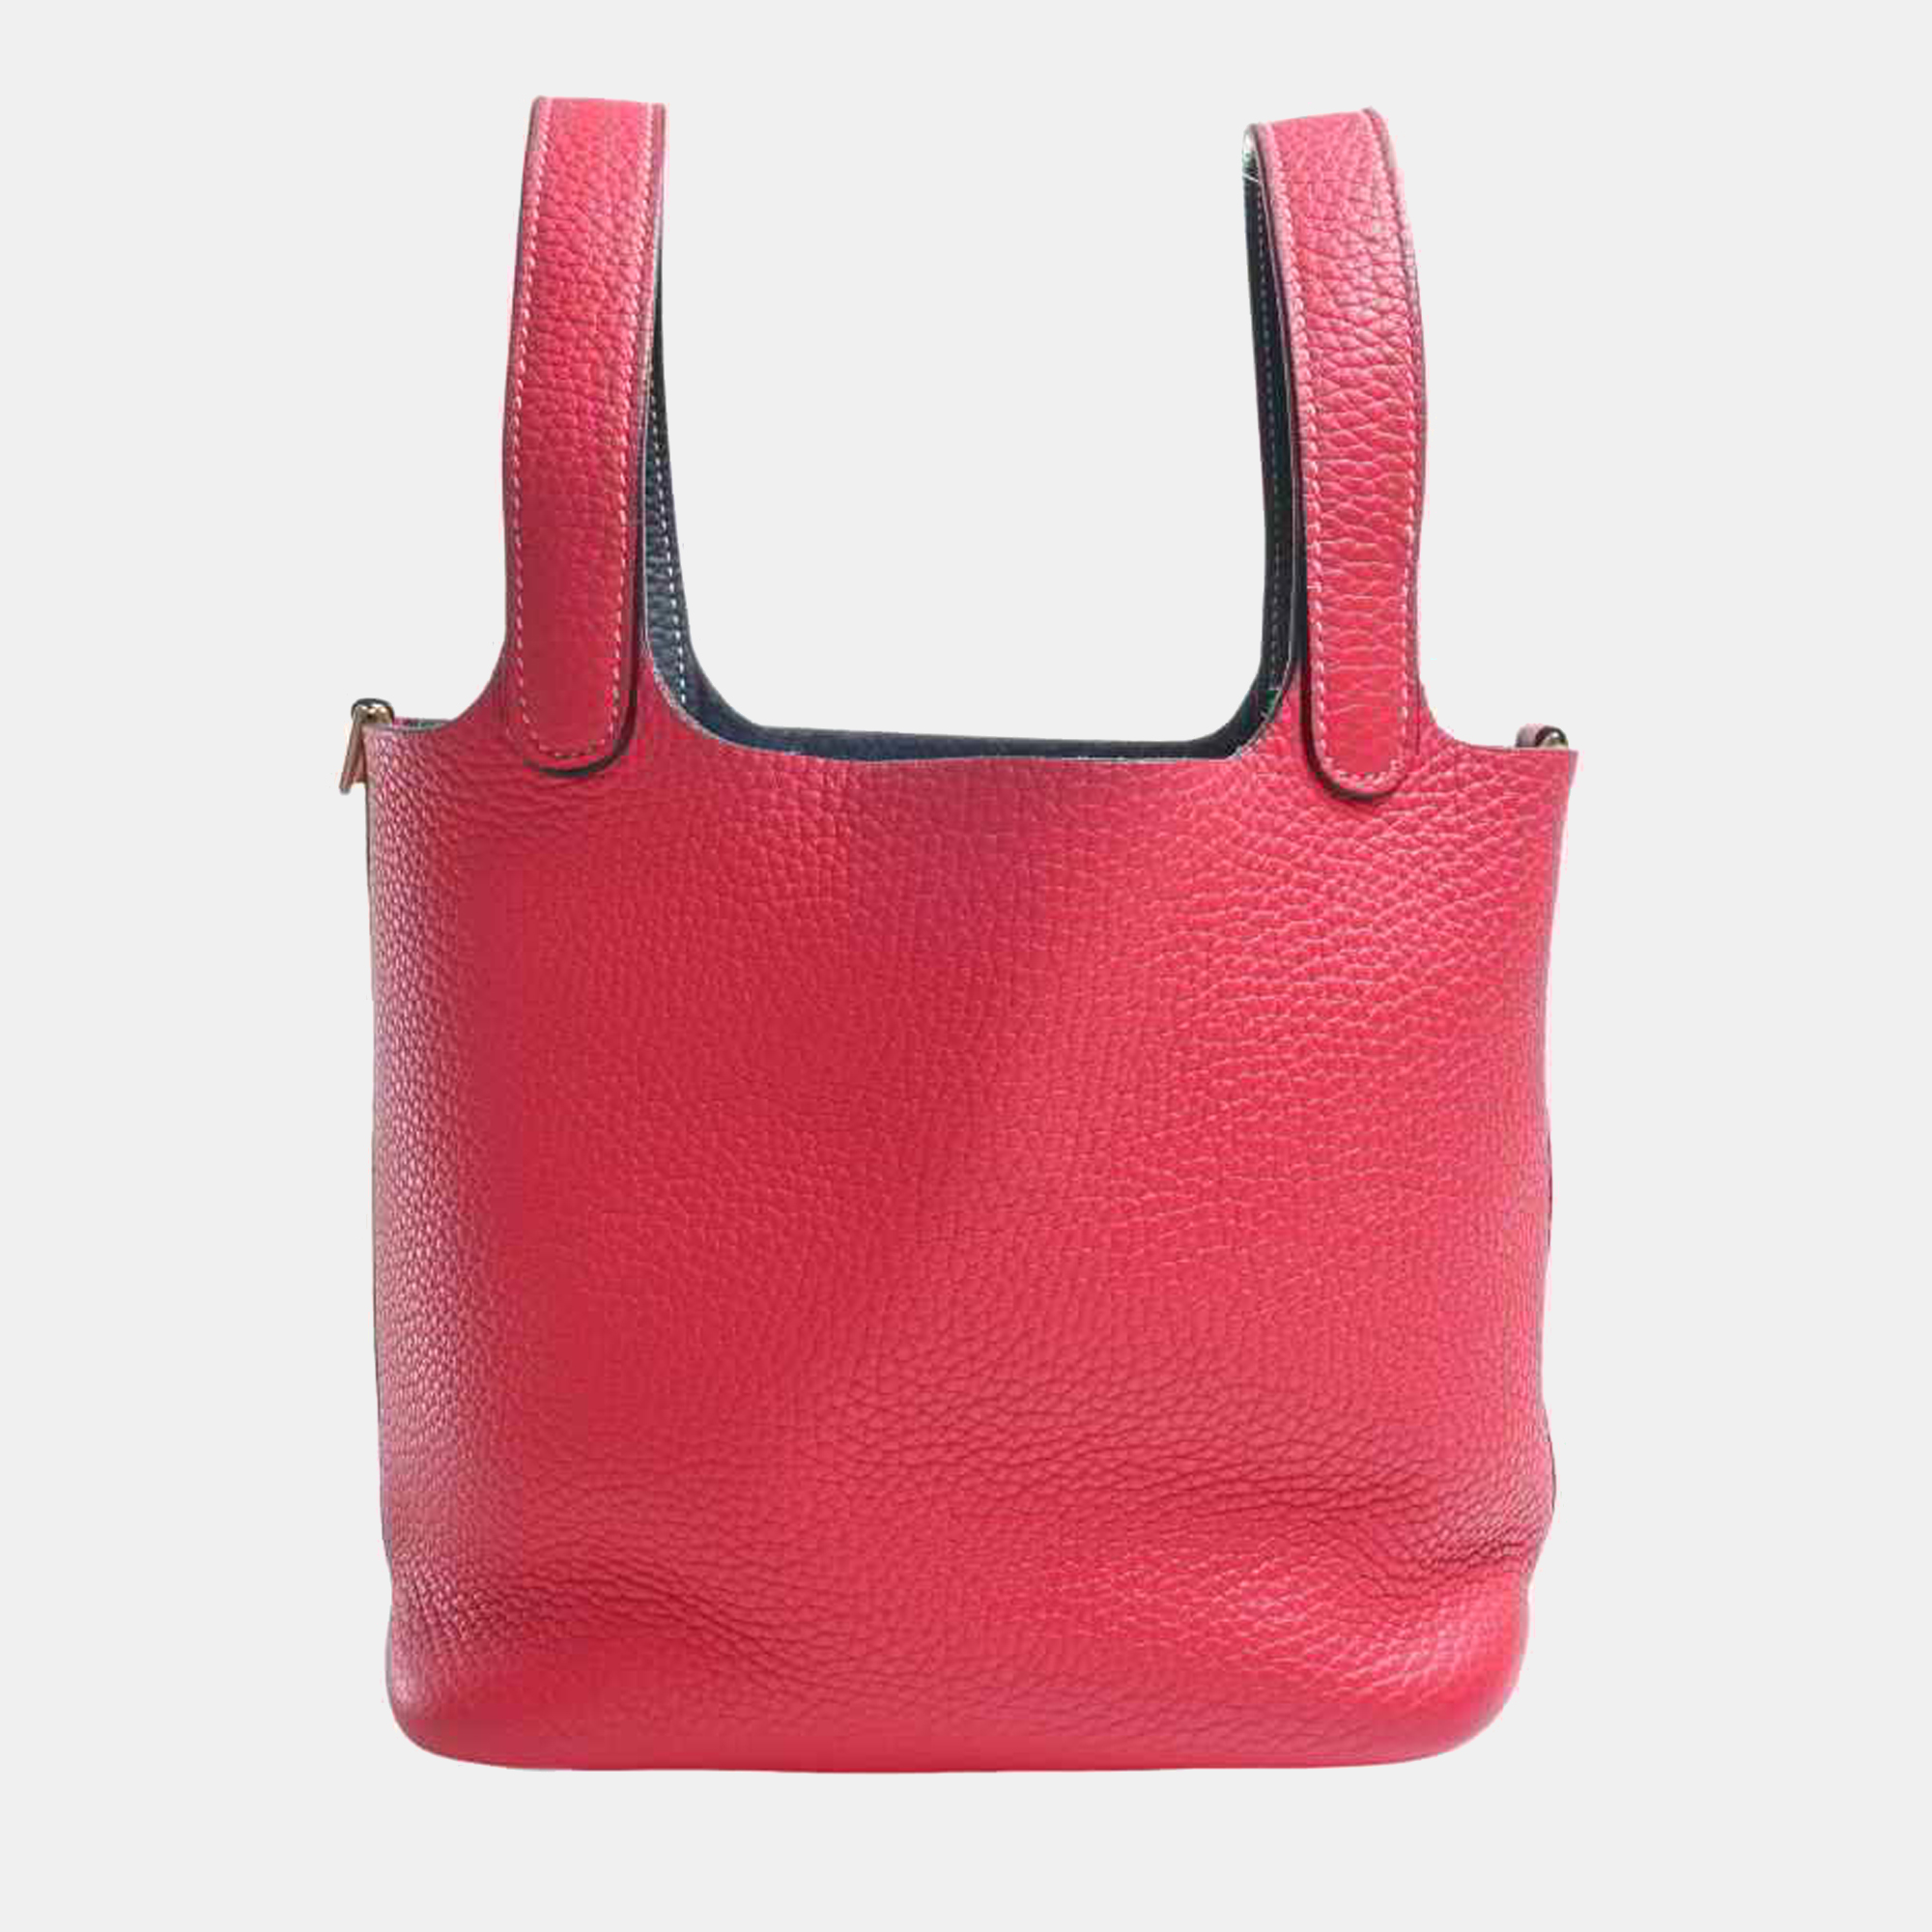 Hermes Taurillon Clemence Picotin Lock PM Handbag Pink